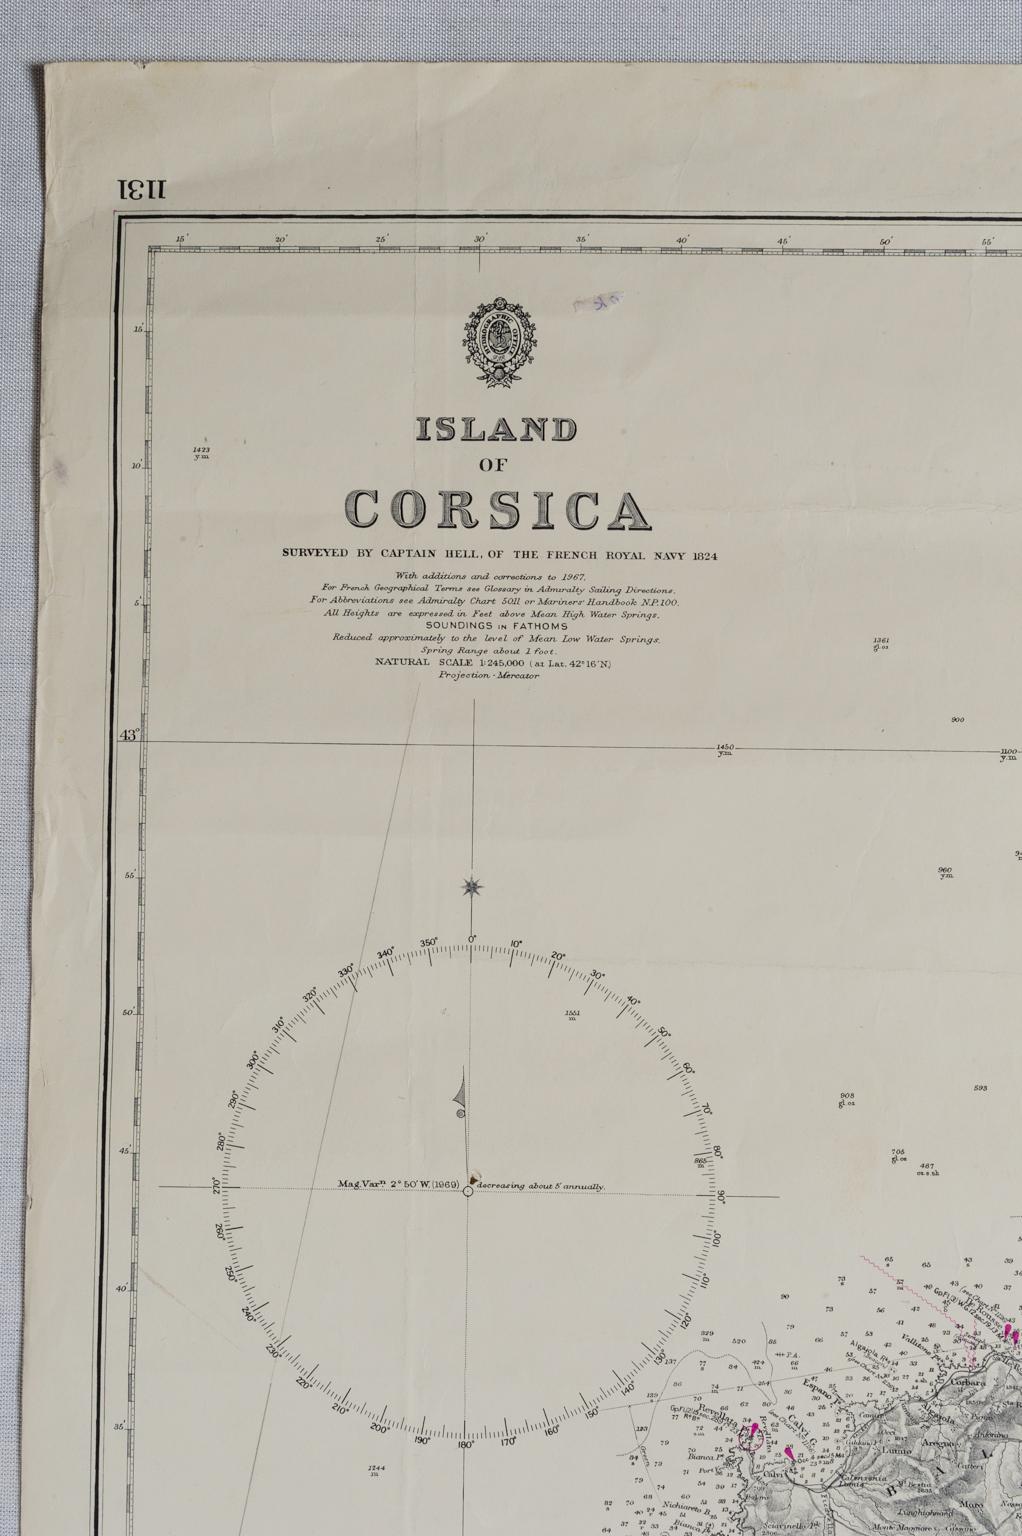 ST/556/1 - Carte ancienne de l'île de Corse, levée par le capitaine Hell, de la Marine royale française en 1824, gravée et publiée le 1874, avec des additions et des corrections à la projection de 1967-68-69 - Mercator - Imprimé en août 1970.